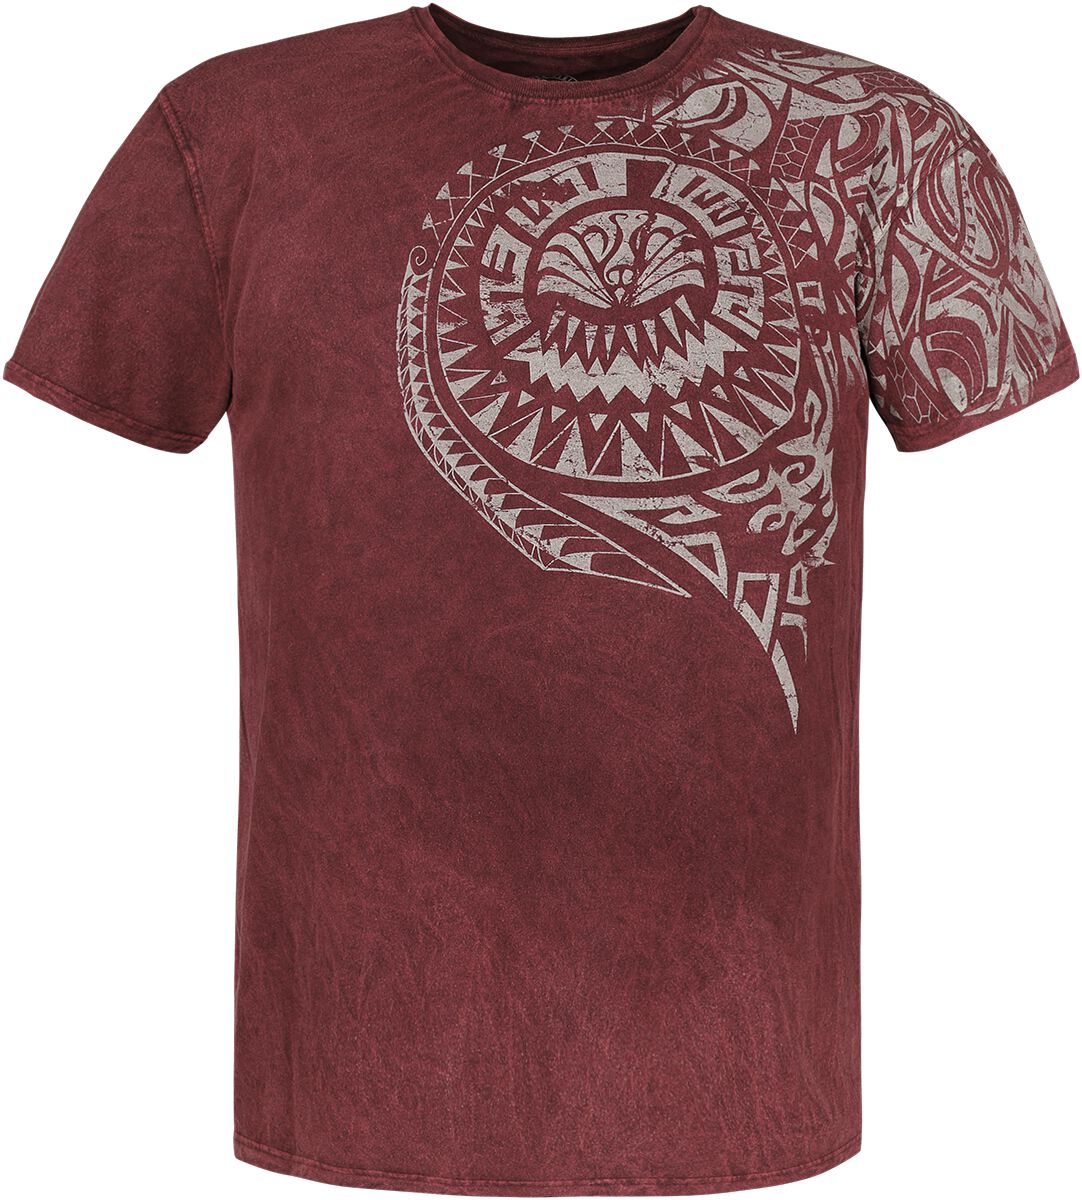 Outer Vision T-Shirt - Burned Tattoo - S bis 4XL - für Männer - Größe 3XL - rot